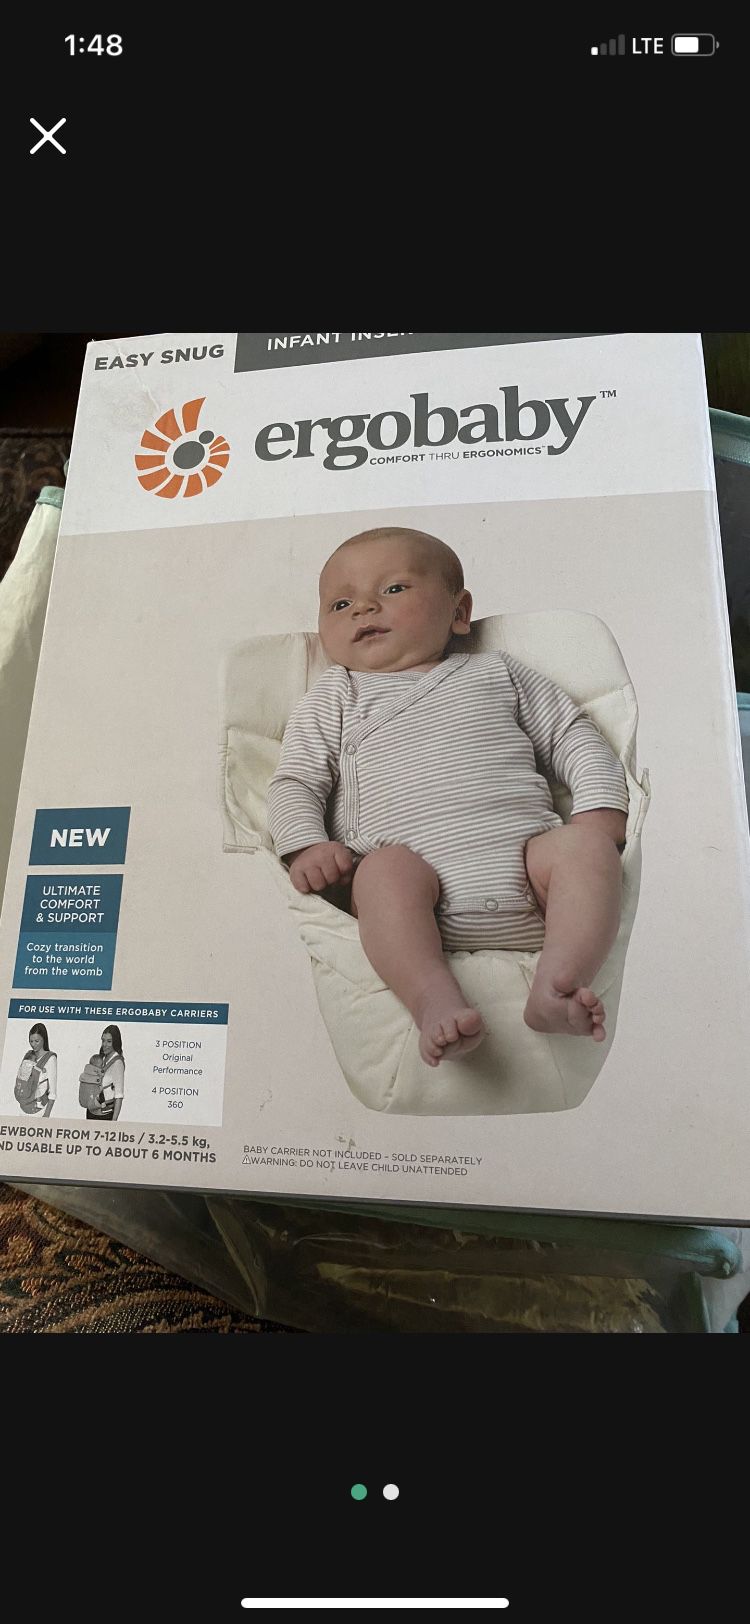 Baby Carrier Insert For Ergo Baby Carrier